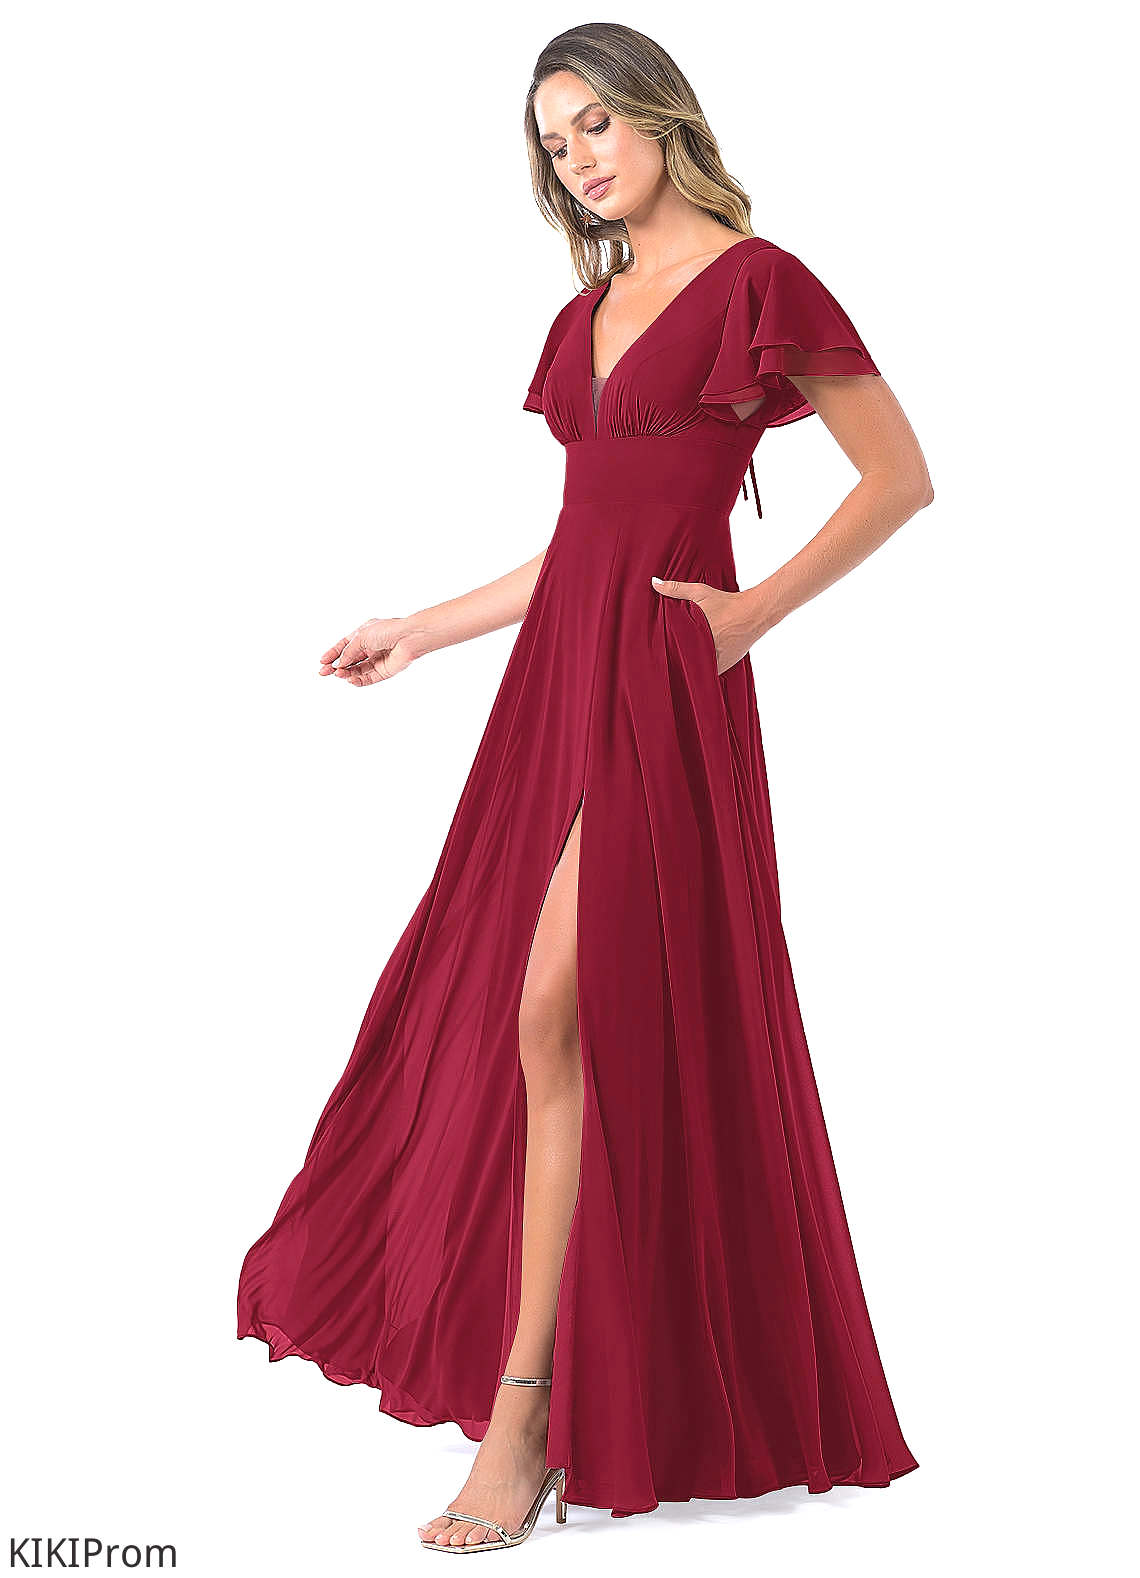 Dahlia Sleeveless Natural Waist Floor Length Off The Shoulder A-Line/Princess Bridesmaid Dresses